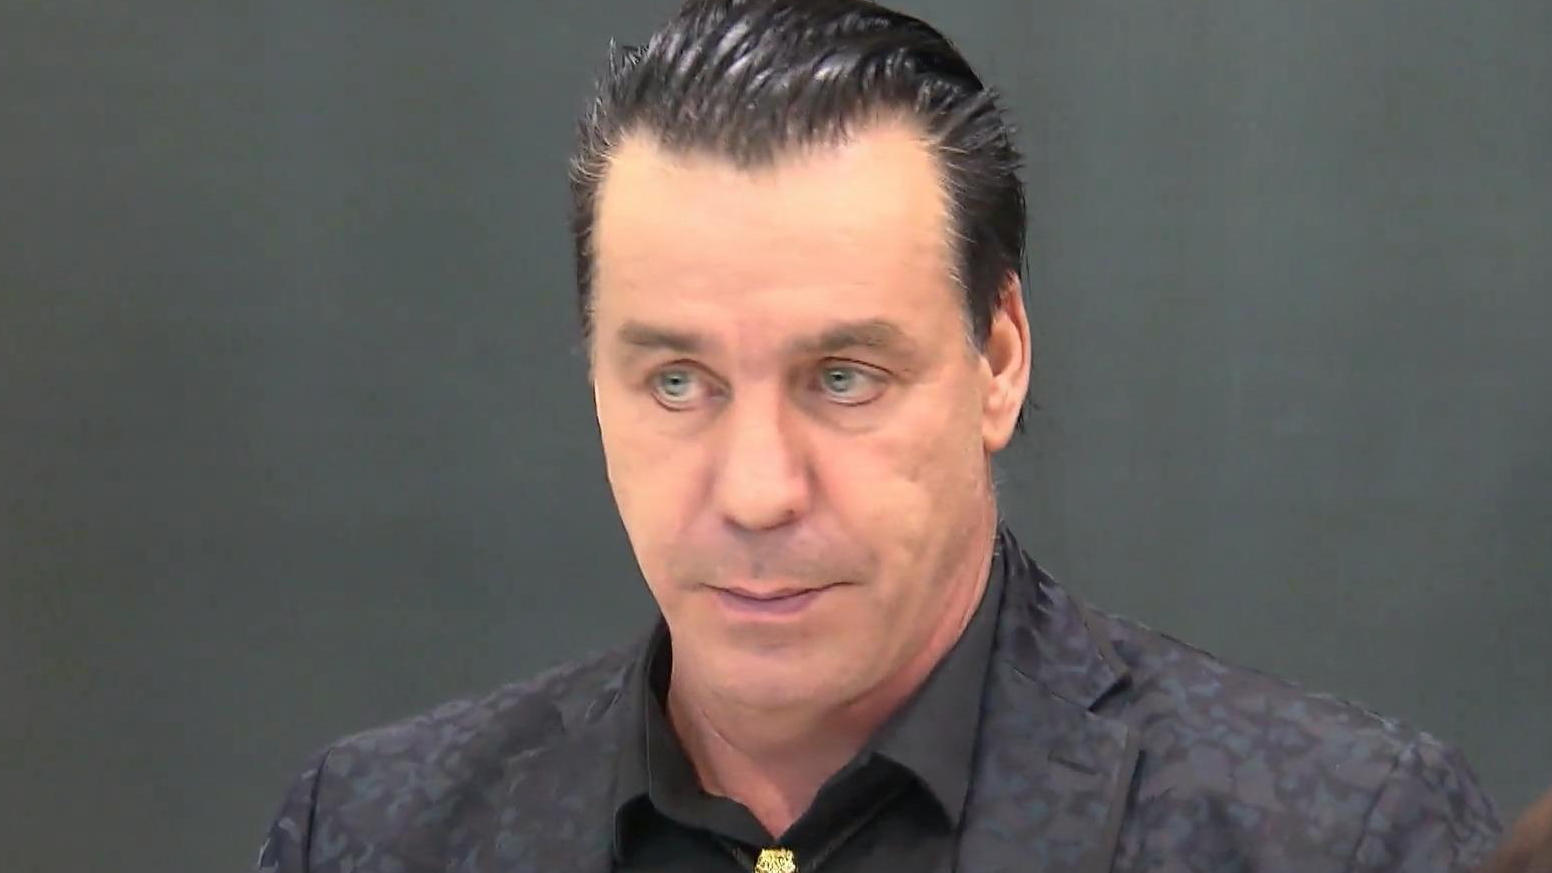 La Universal Records sta piazzando la promozione dei Rammstein in attesa di accuse contro Till Lindemann